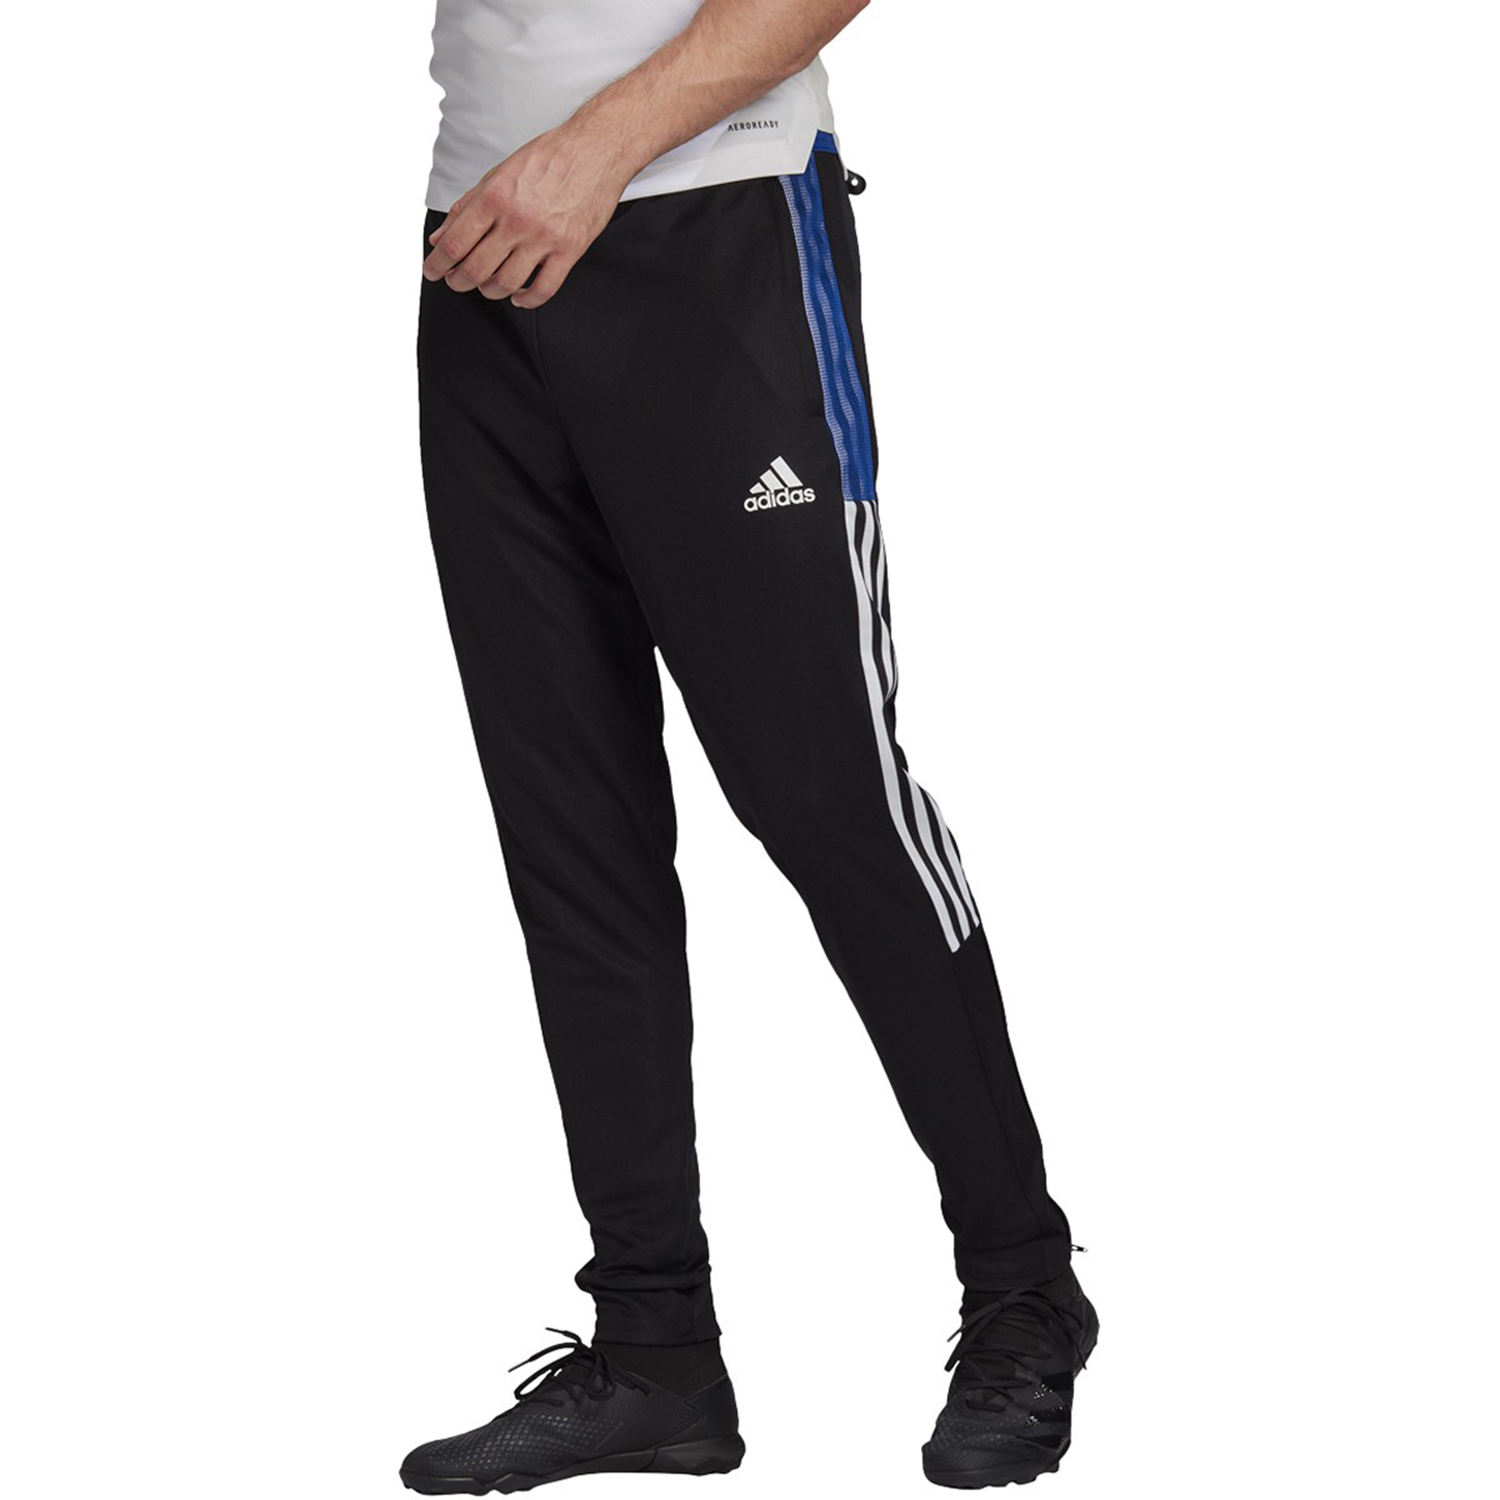 Adidas Tiro 21 Men's Track Pants Black-Royal Blue gj9866